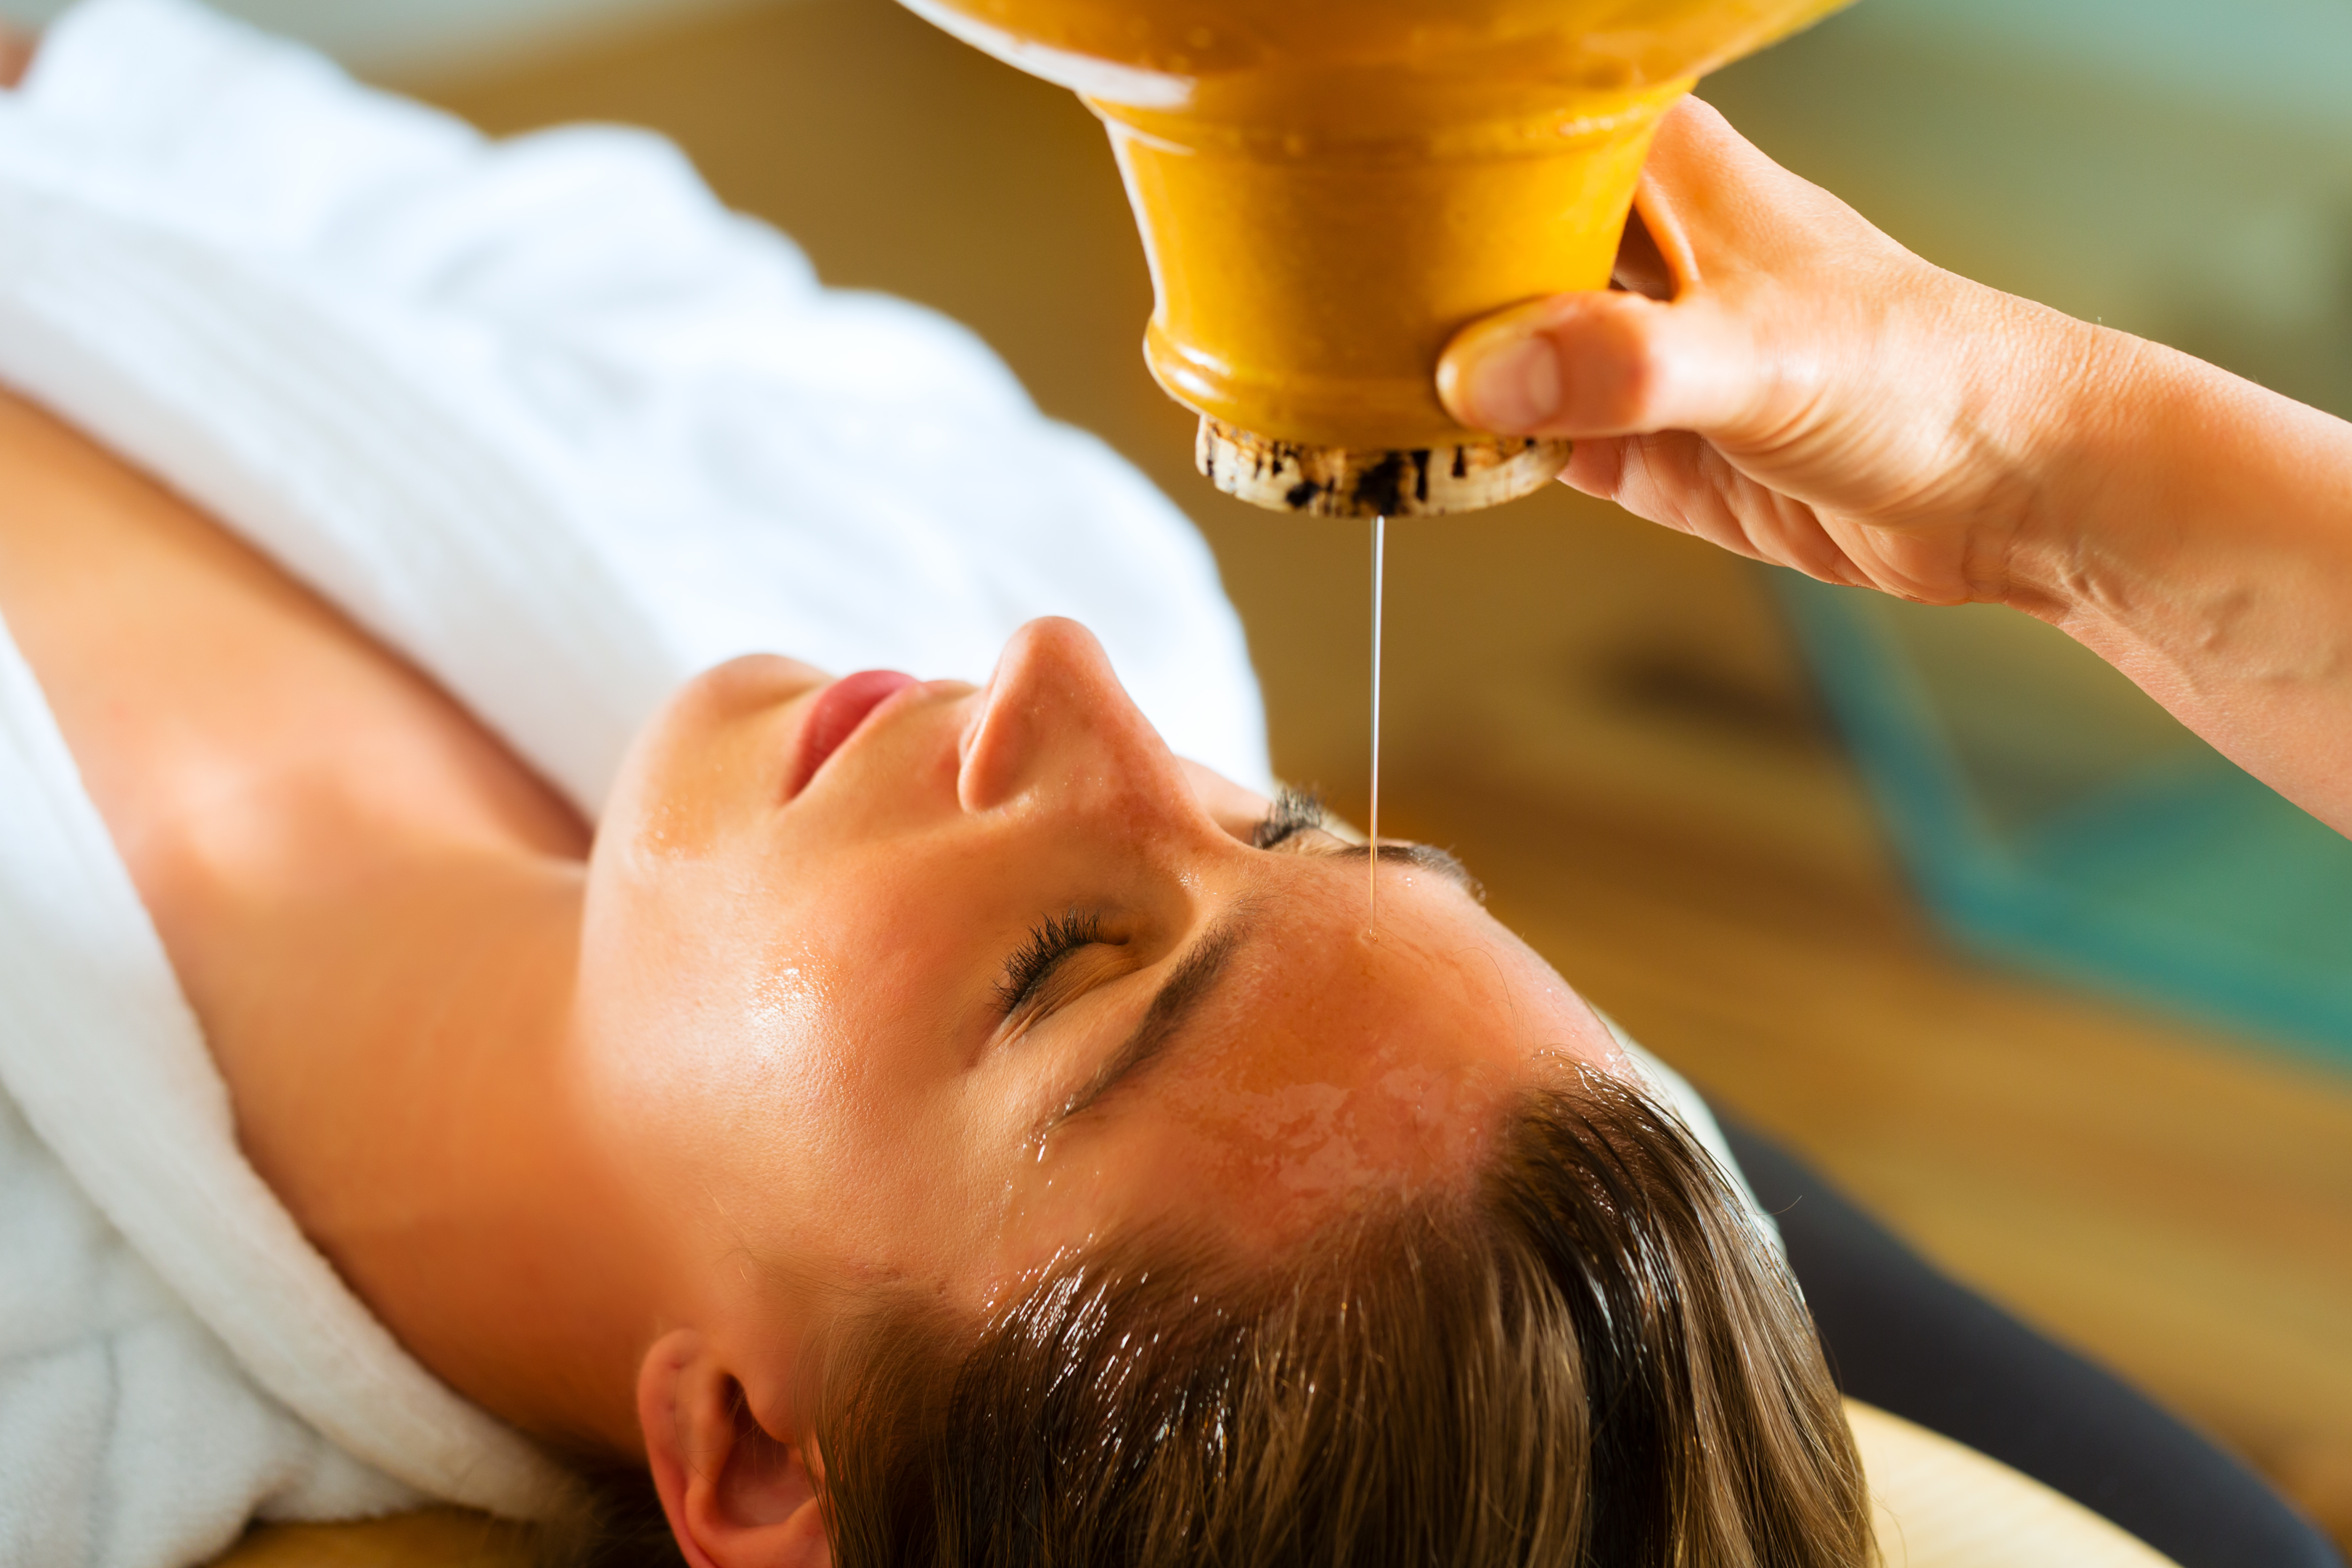 Heat massage oil